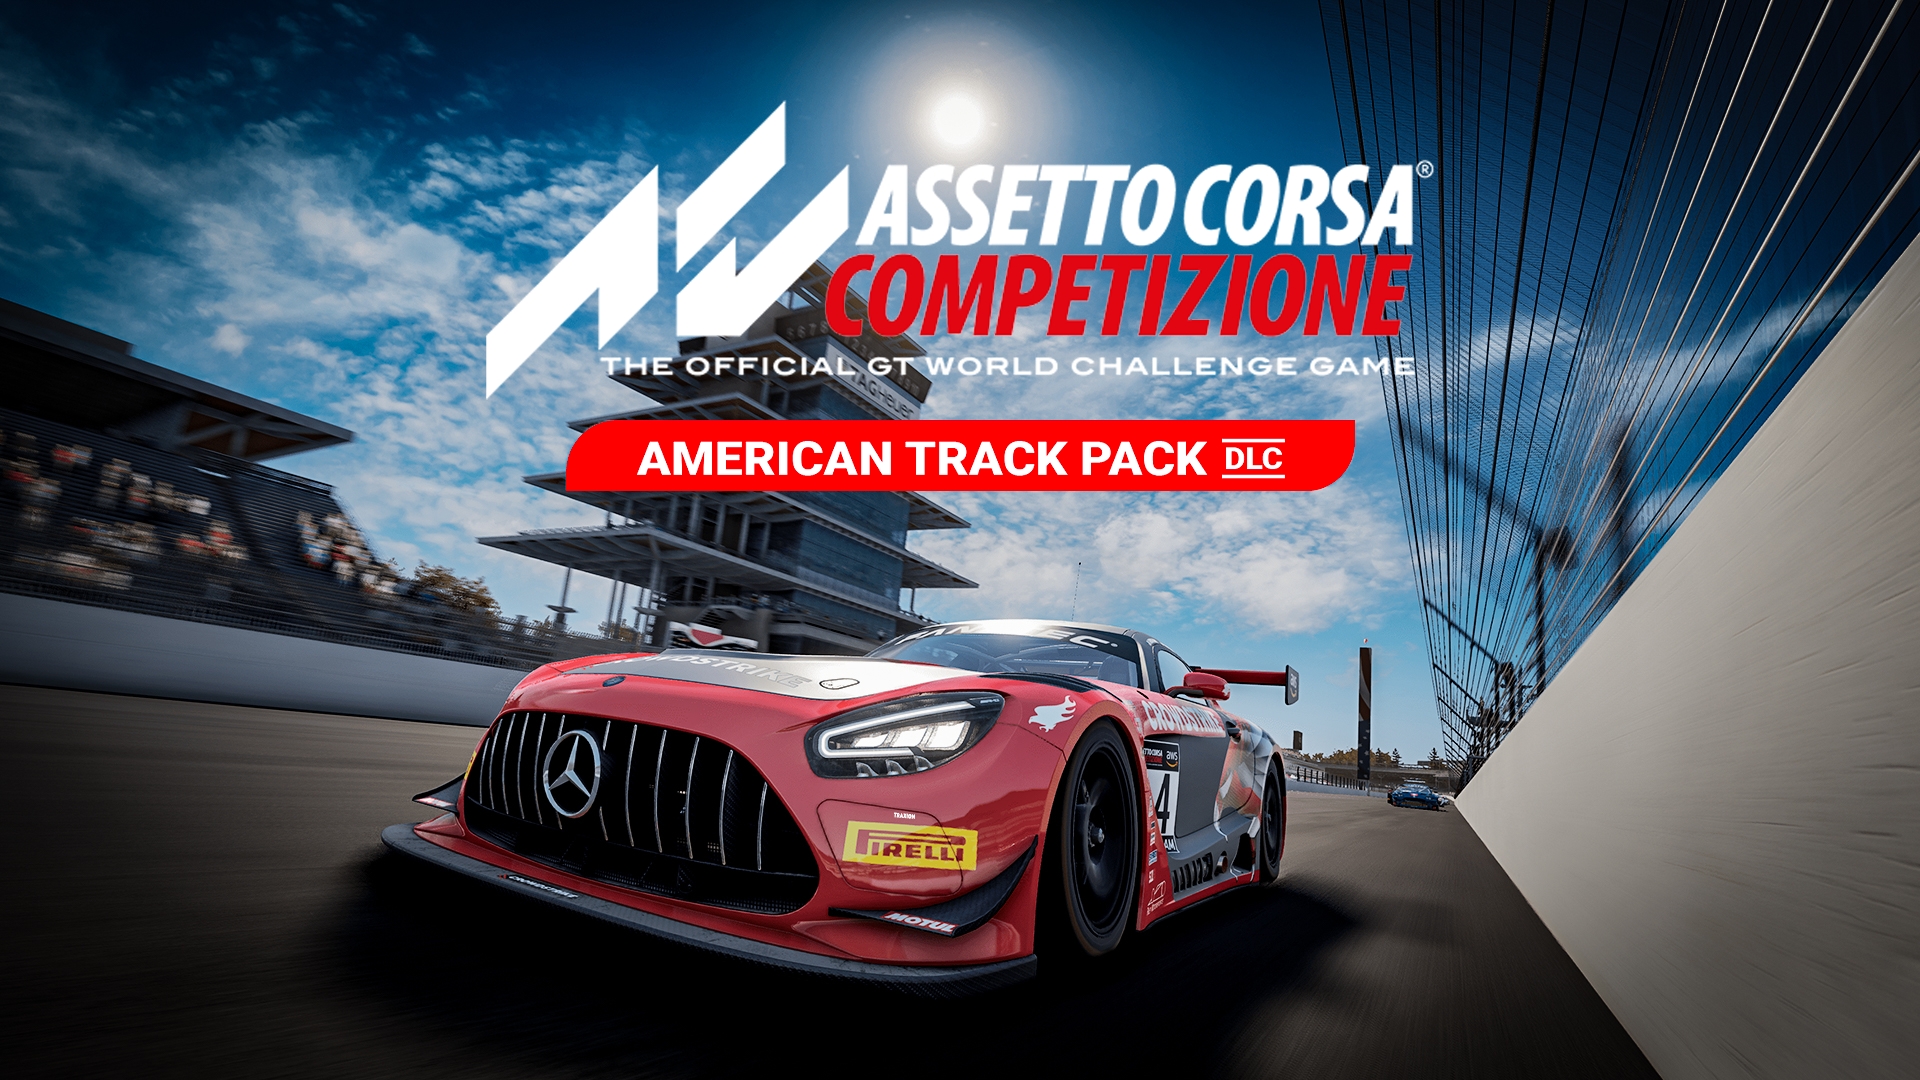 Assetto Corsa Competizione - American Track Pack on Steam